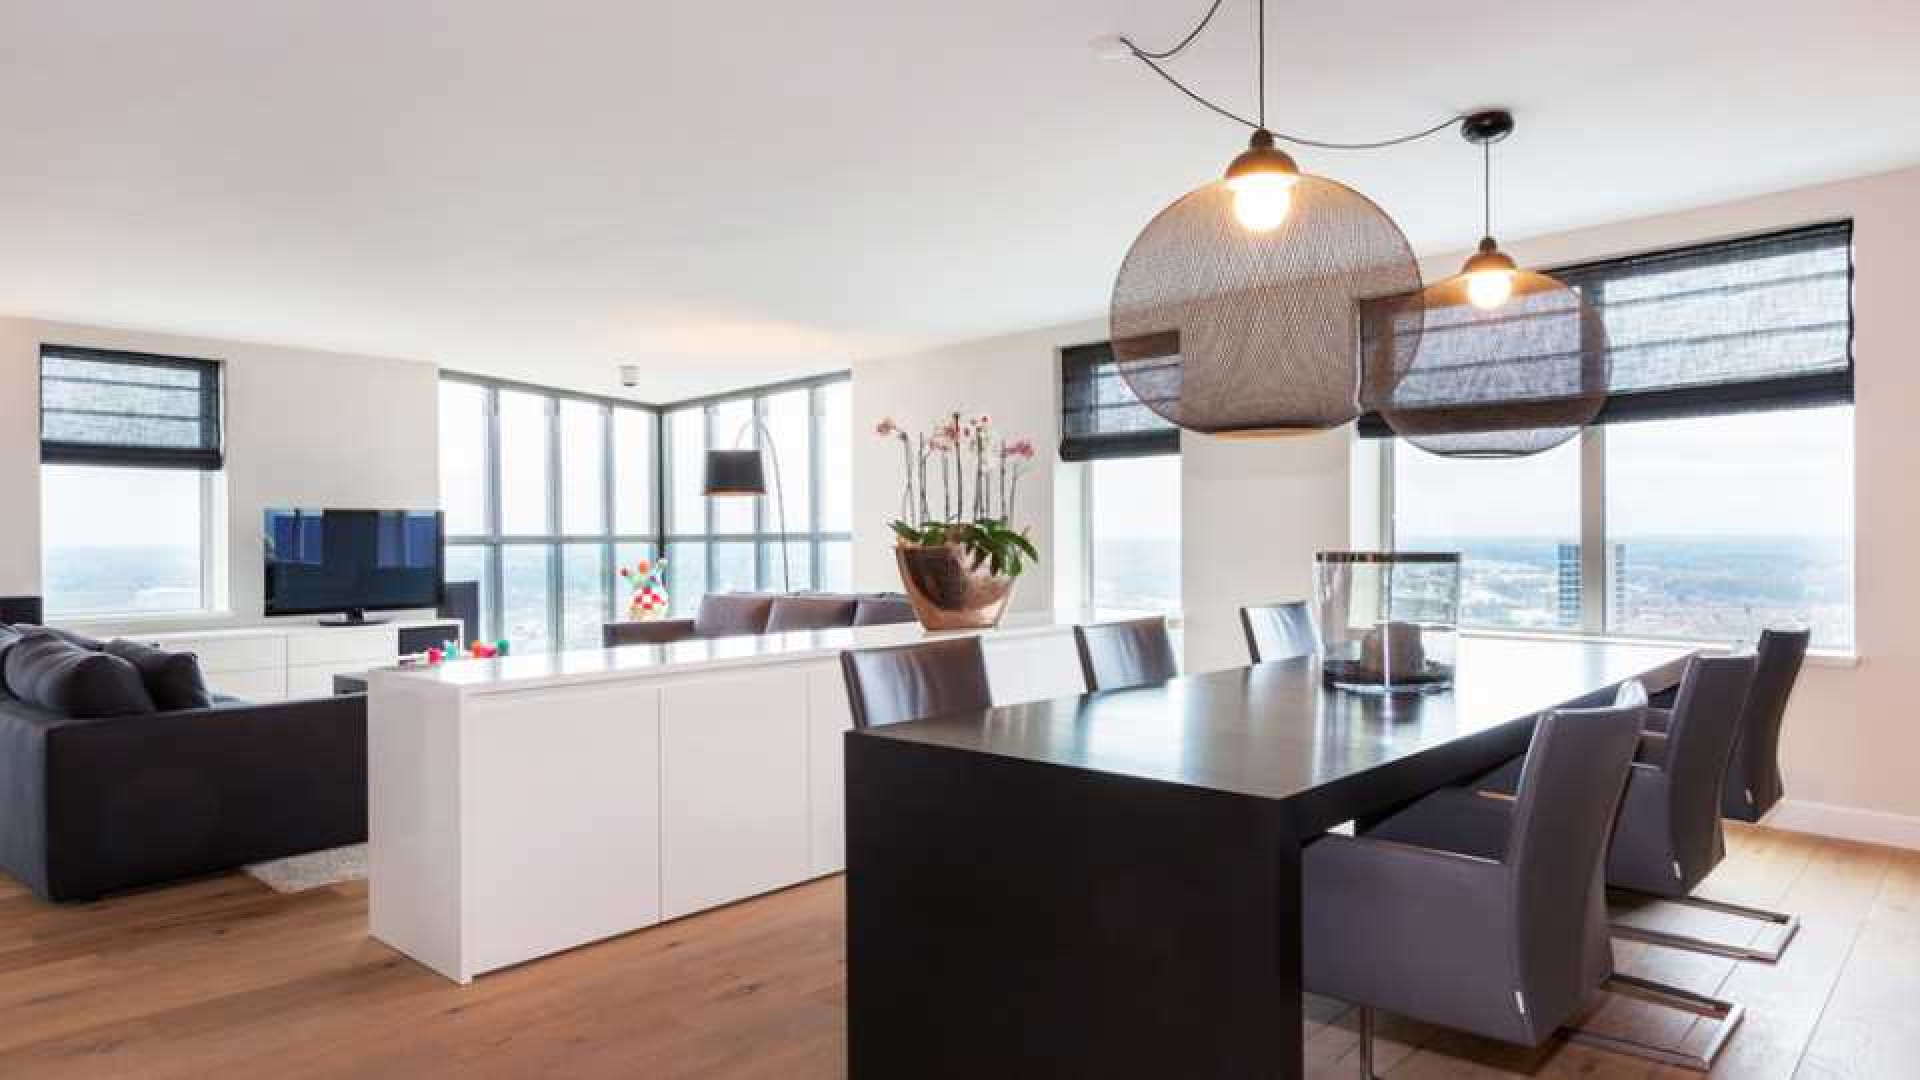 Amanda Krabbe en haar man Harrie Kolen zetten hun luxe penthouse in stille verkoop. Zie foto's 6